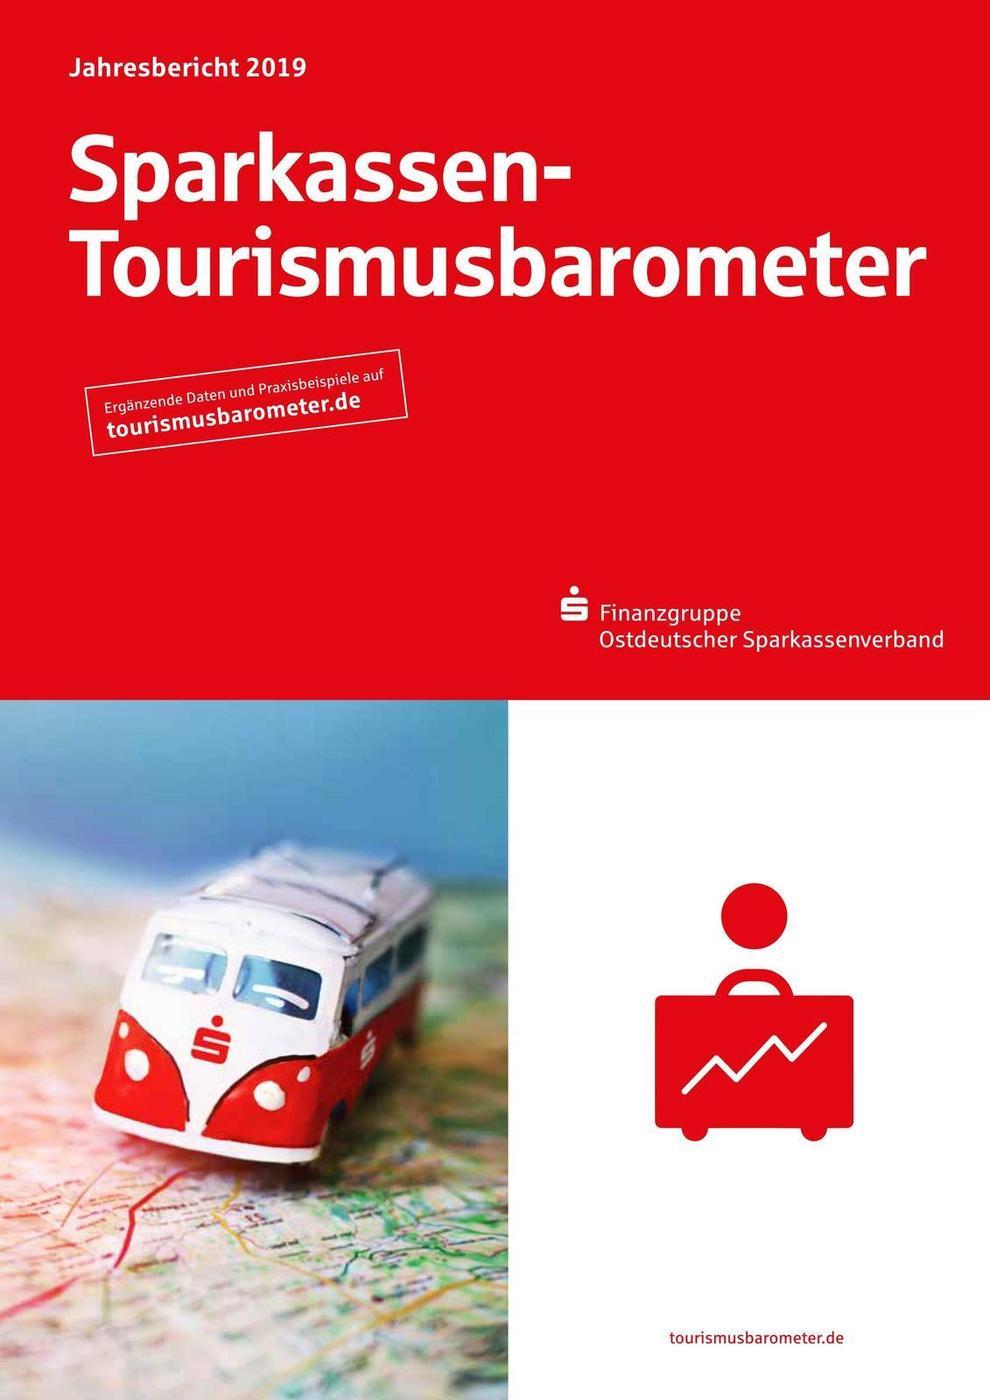 Sparkassen-Tourismusbarometer Mecklenburg-Vorpommern – Schwerpunkthema »Nachhaltige Mobilität«